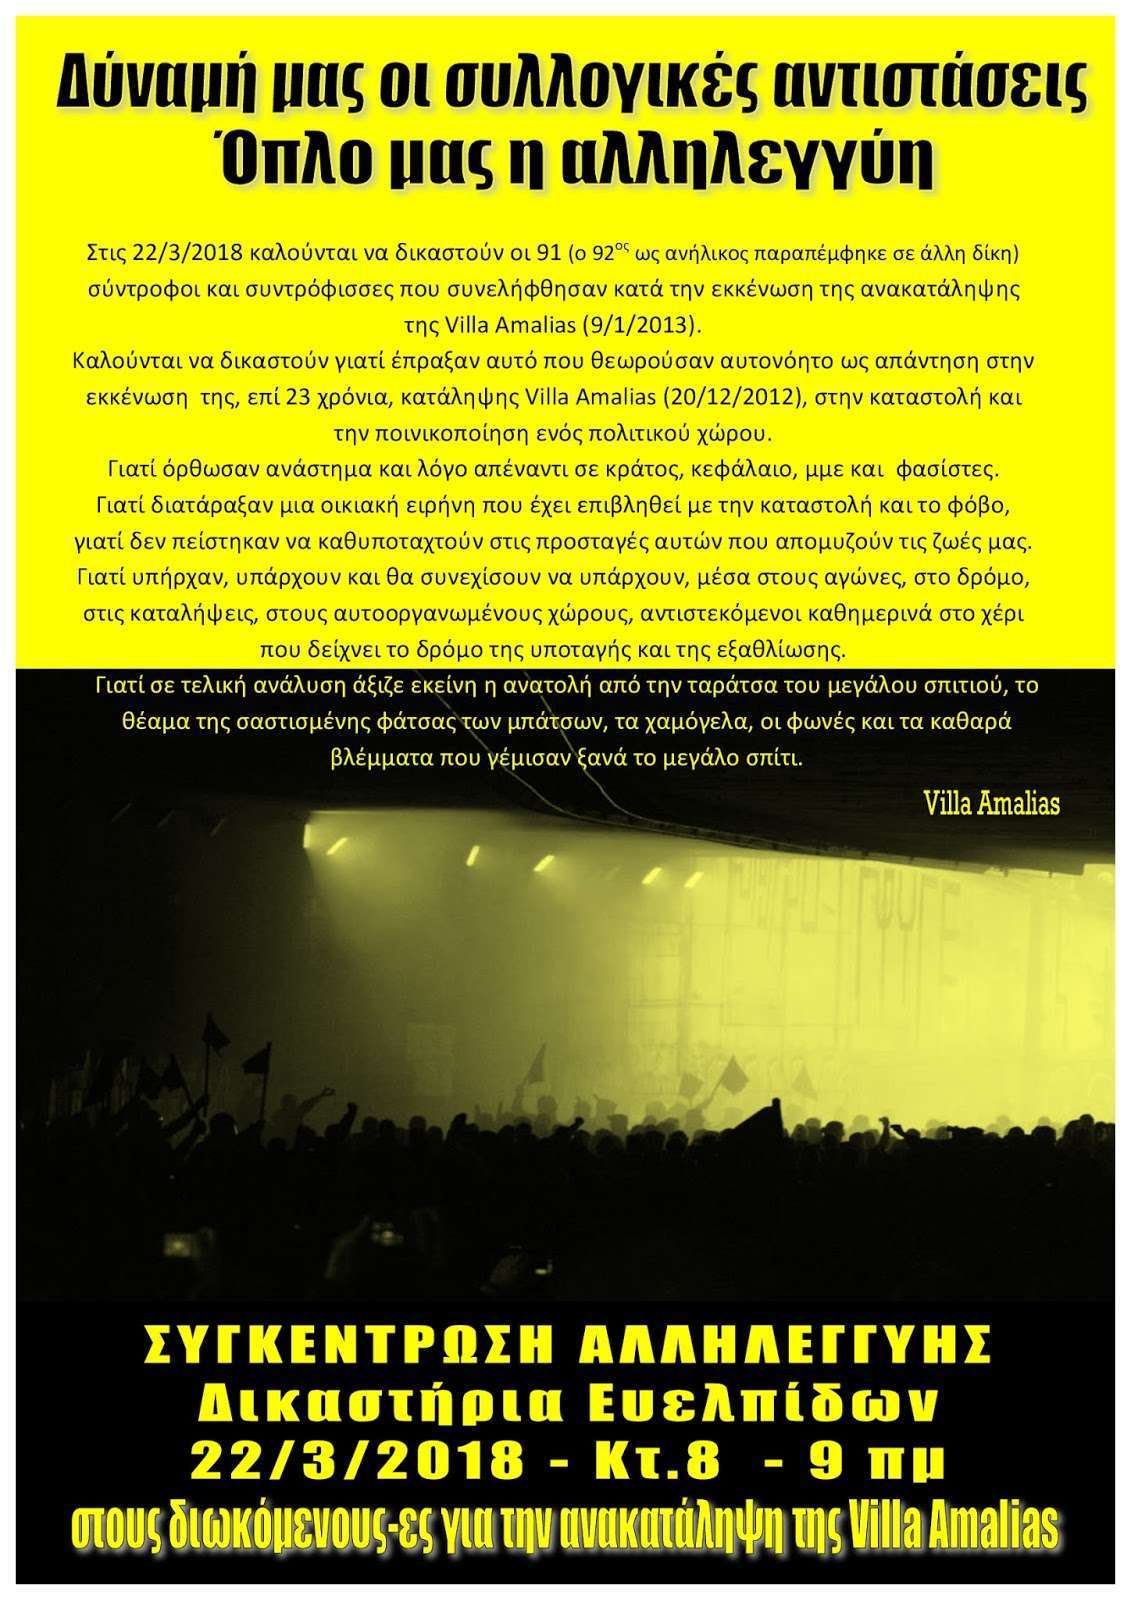 Αθήνα: Συγκέντρωση αλληλεγγύης στους/στις συντρόφους-ισσες που δικάζονται για την ανακατάληψη της Villa Amalias